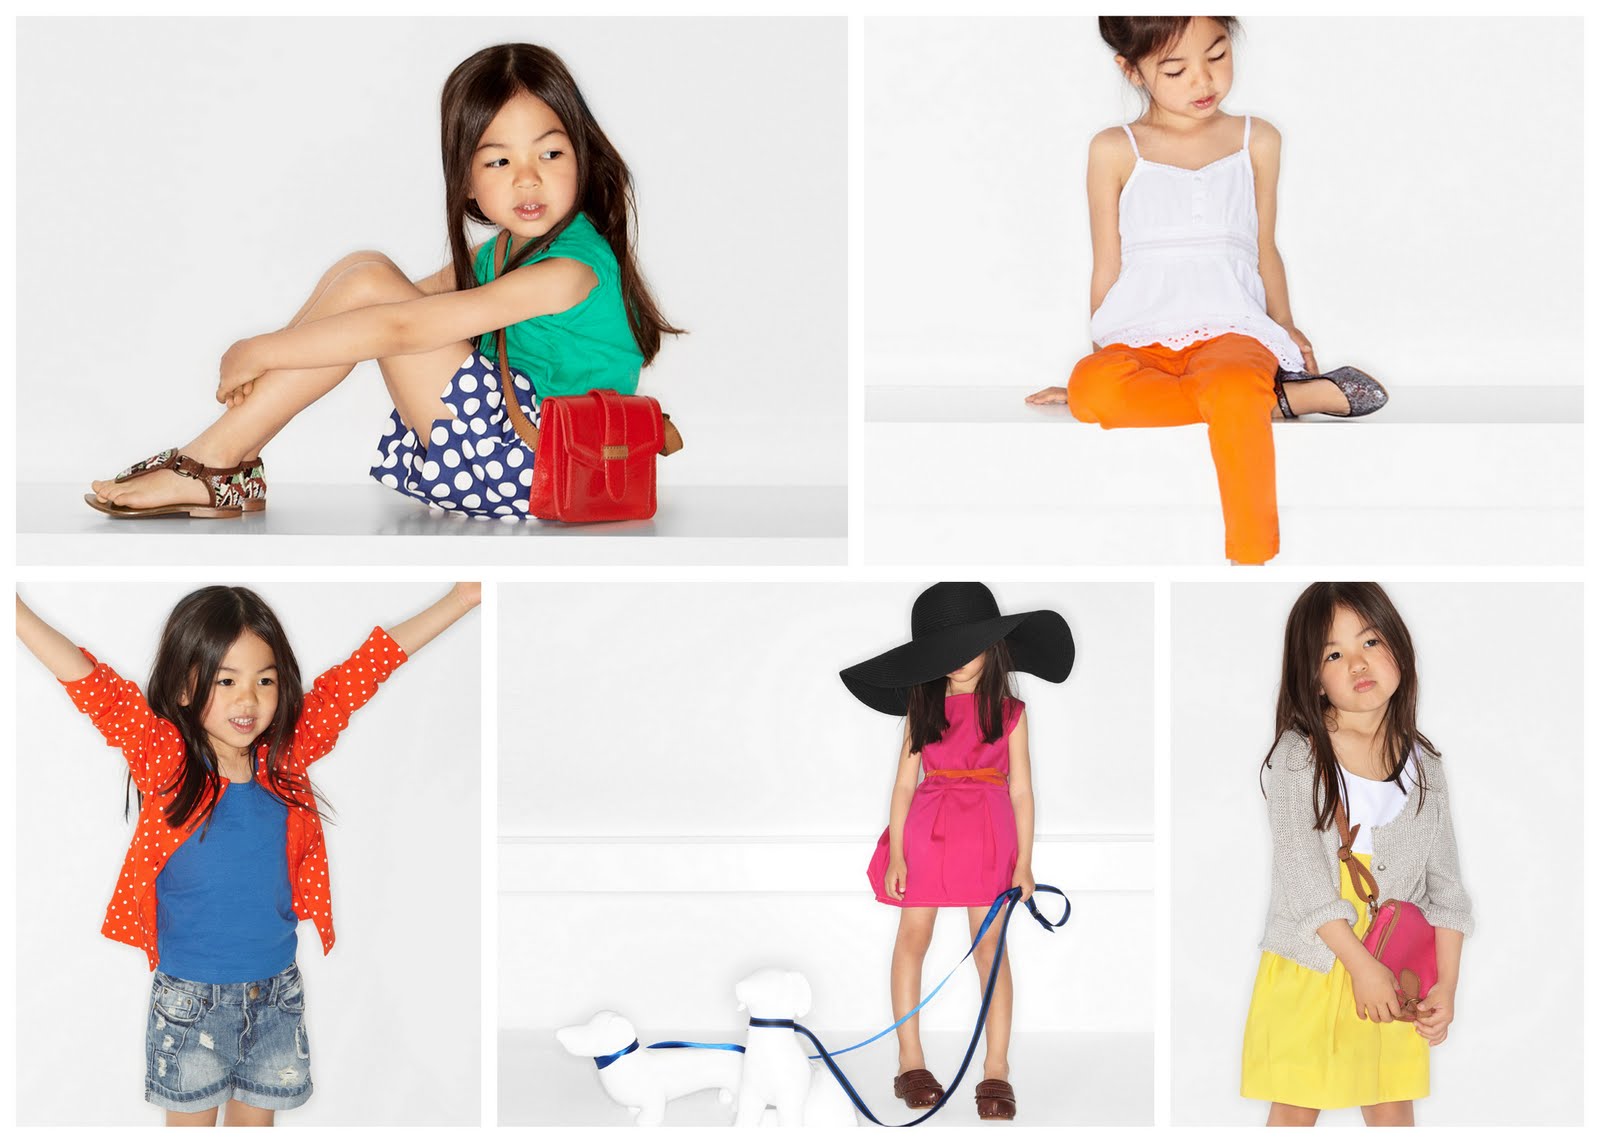 ... â Zara Kids Clothes Kids-dresses-skirts shopping â online